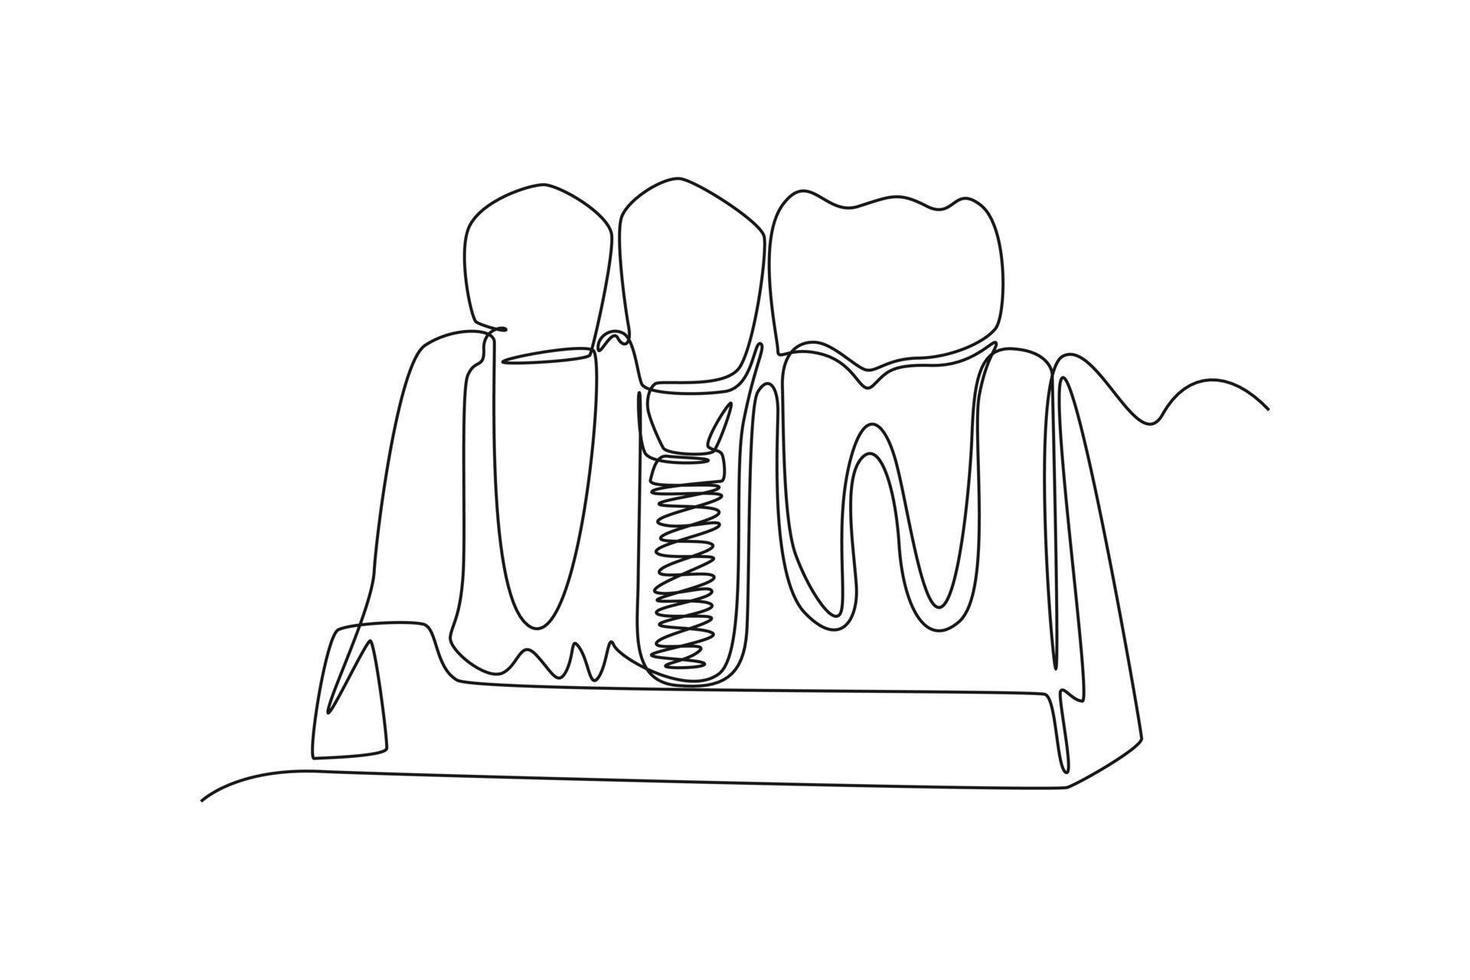 continuo uno linea disegno denti con dentale impiantare. dentale Salute concetto. singolo linea disegnare design vettore grafico illustrazione.